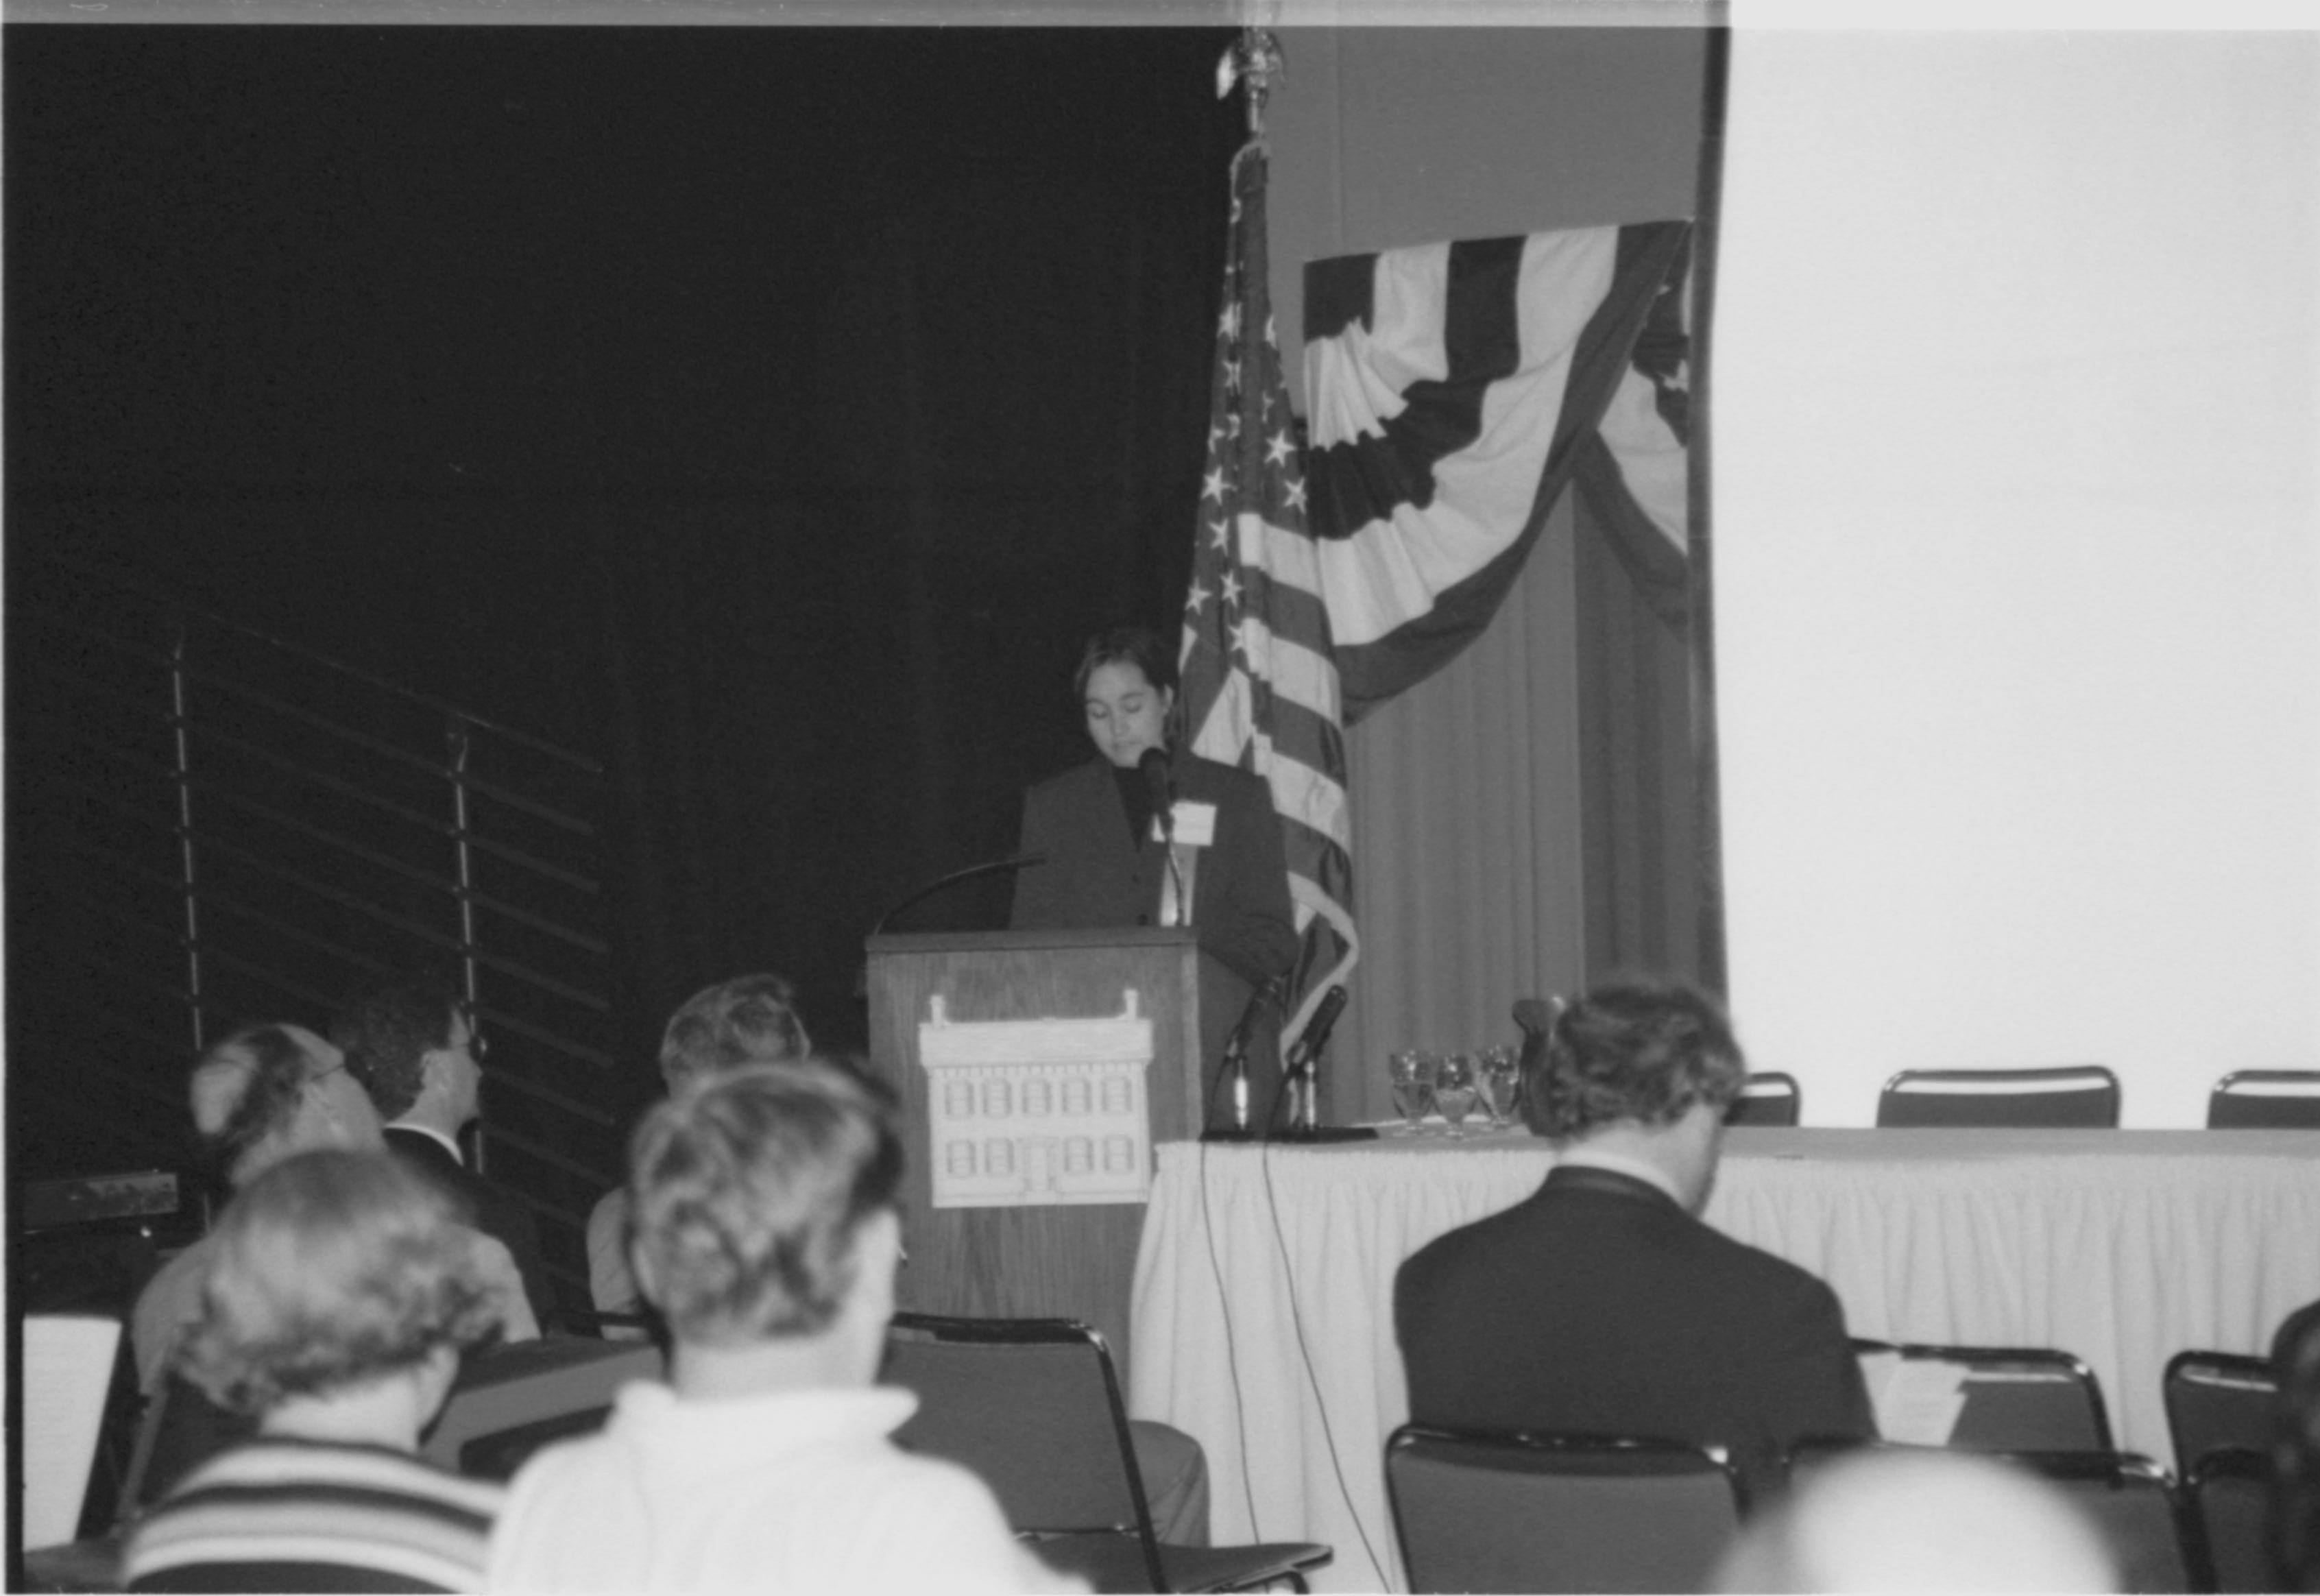 Lady speaking at podium, looking at notes. 1999-16; 27 Colloquium, 1999